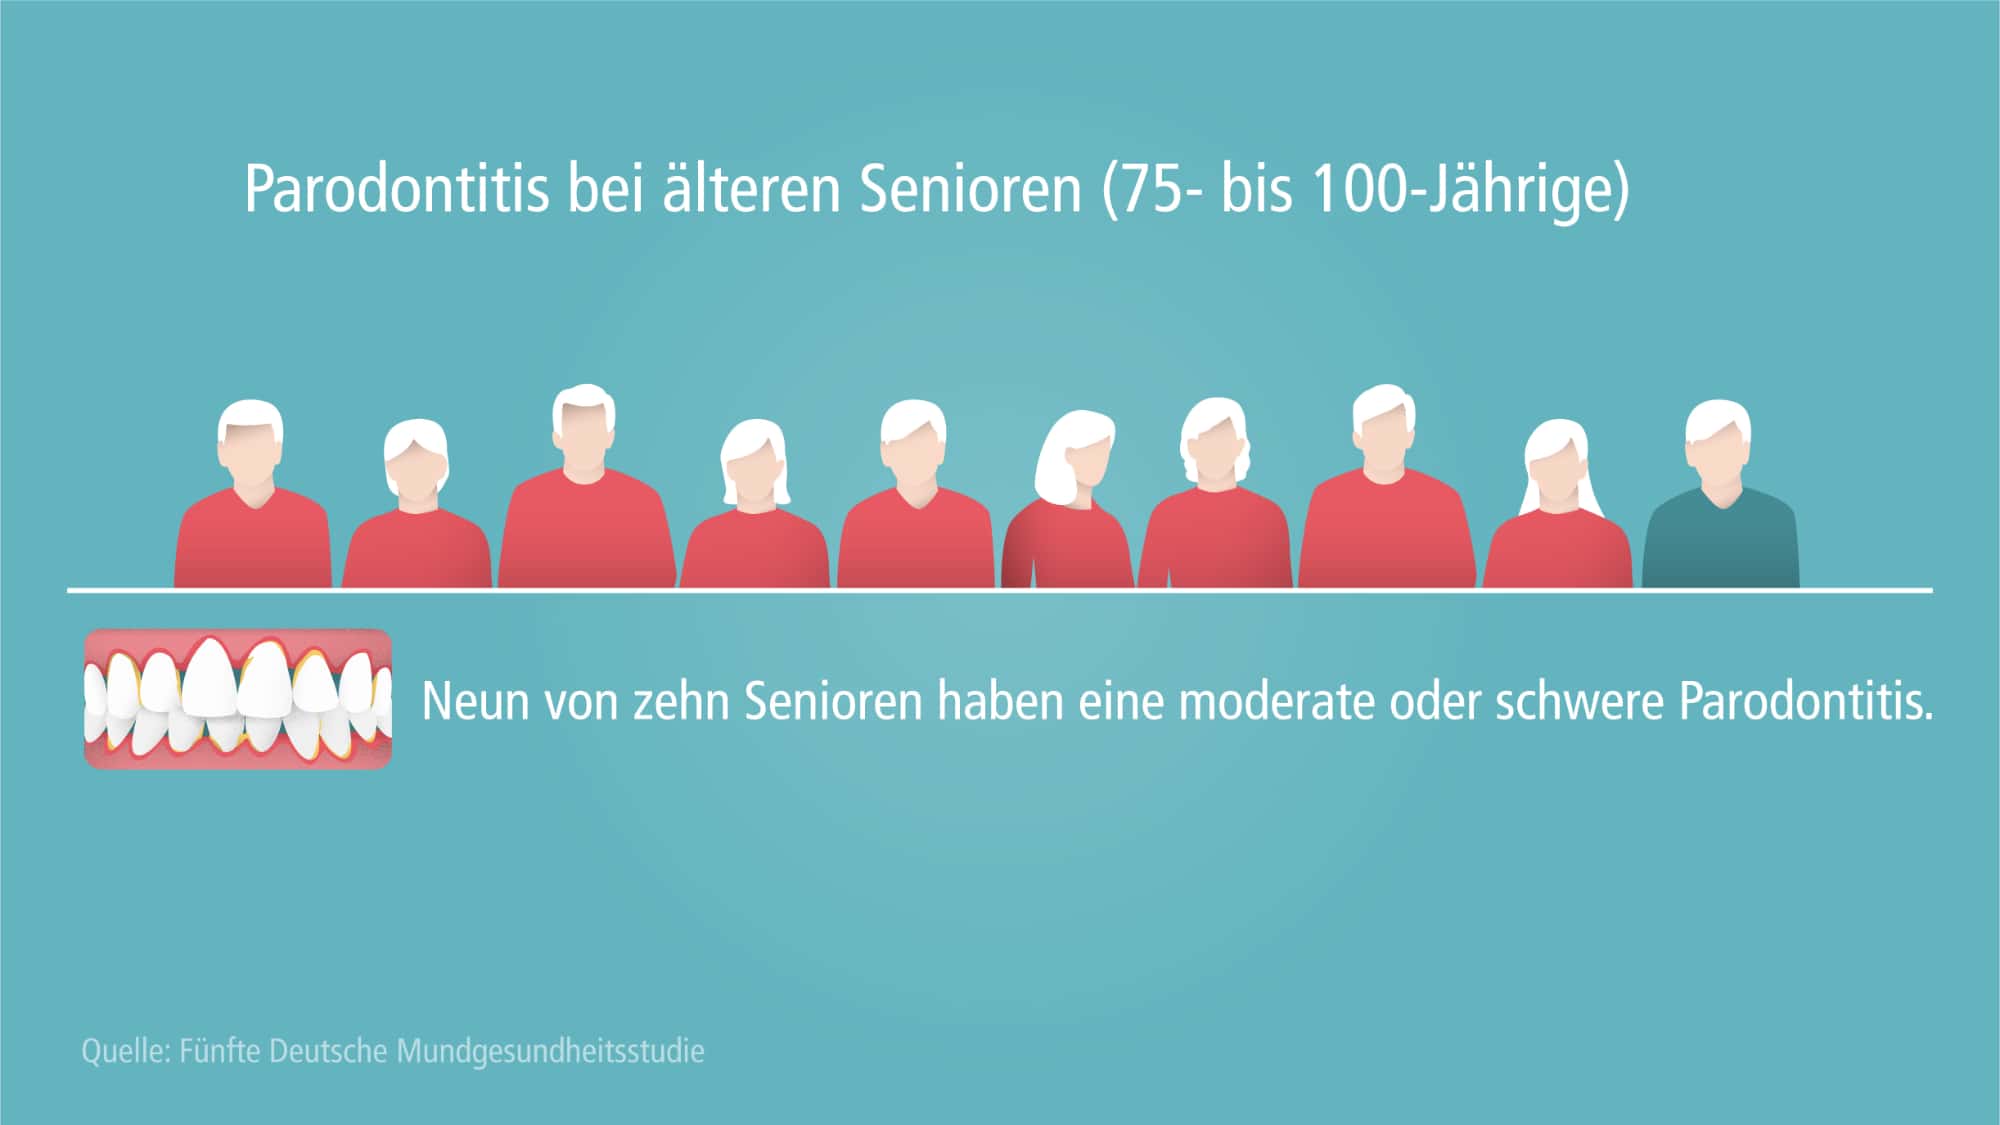 Parodontitisprävalenz bei älteren Senioren 